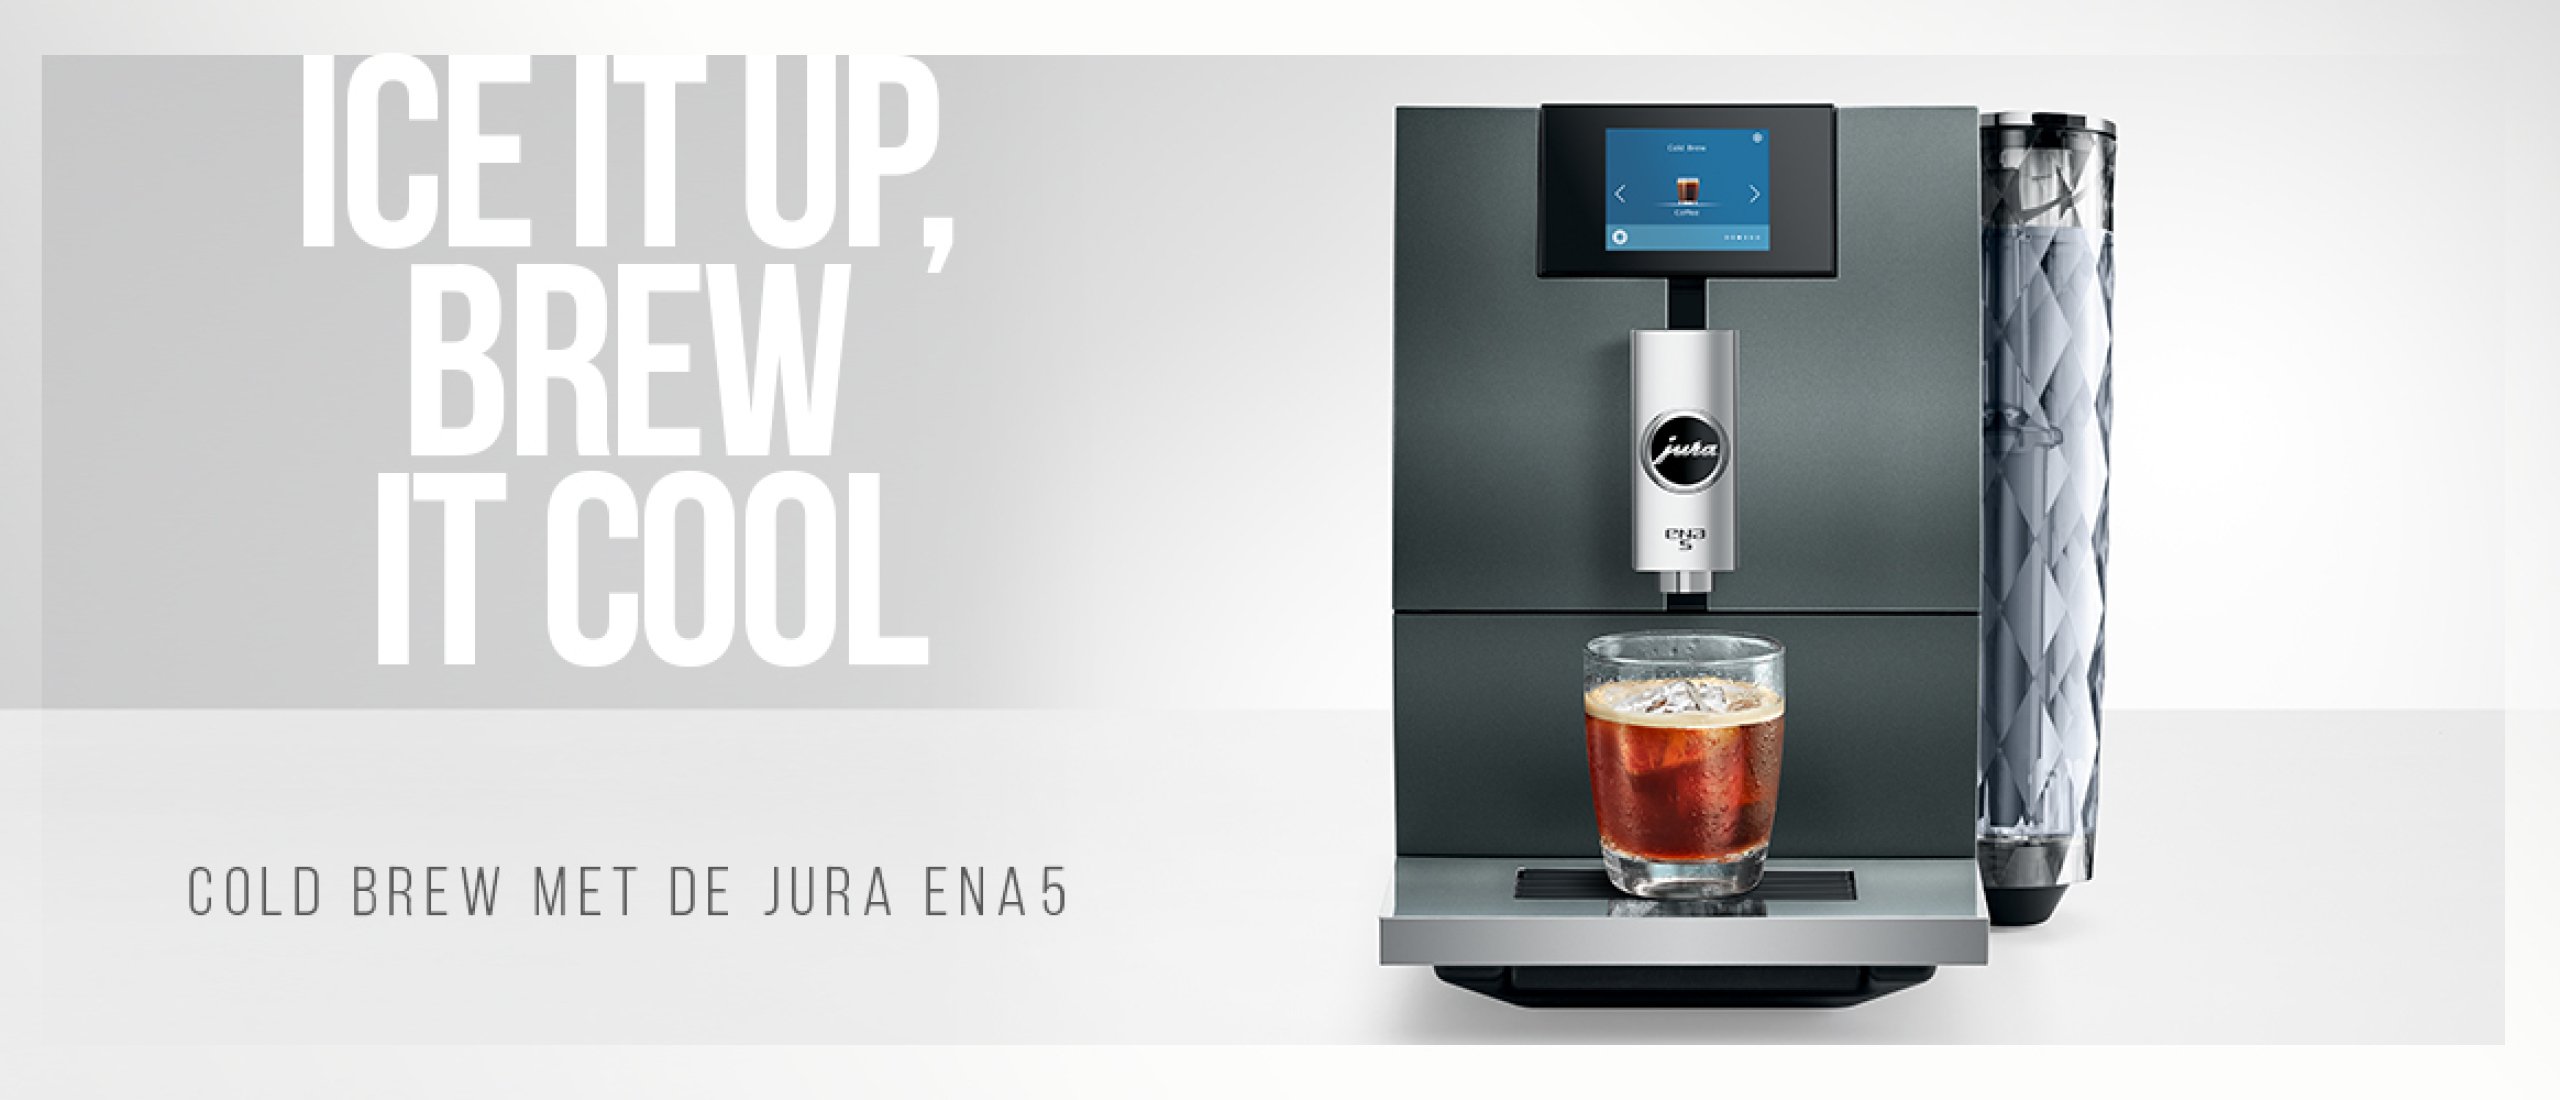 Maak kennis met de JURA ENA 5 (EA): bereid Hot, cold en zelfs light brew met deze innovatieve koffiemachine